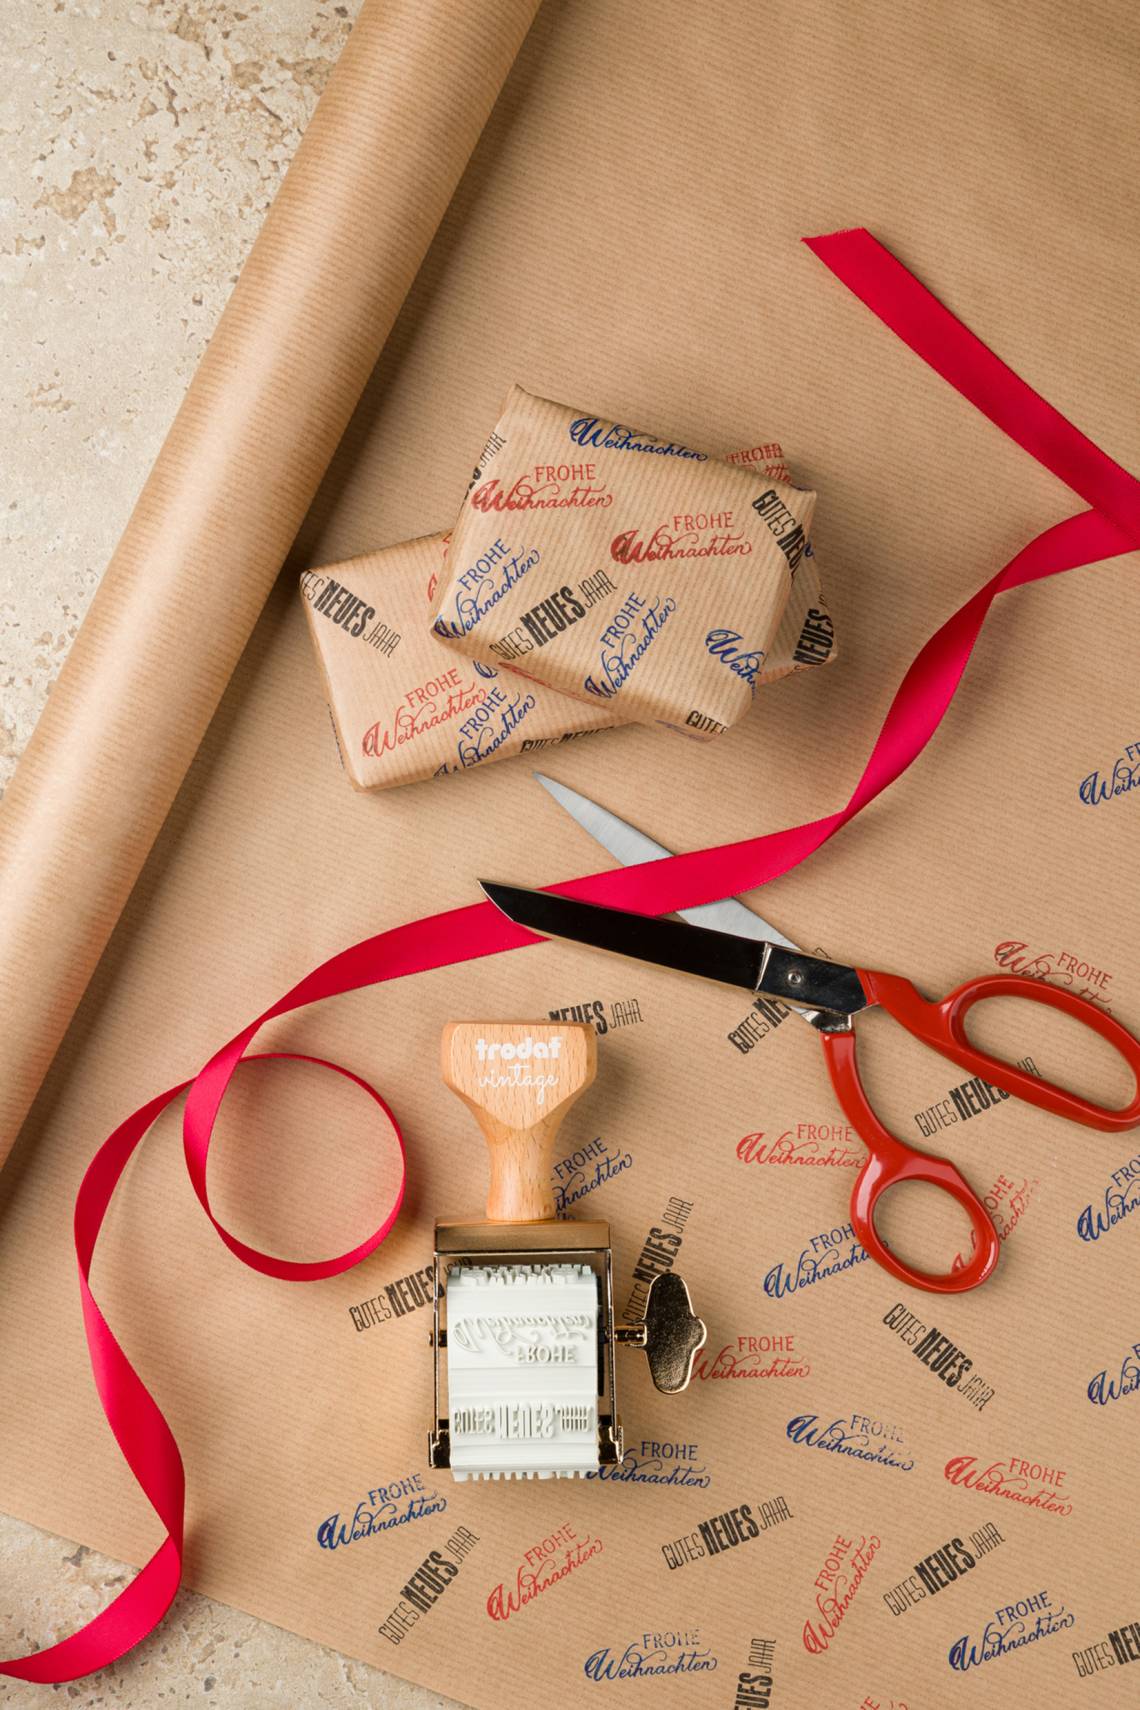 trodat - Vintage Stempel - Besondere Anlässe - Geschenkpapier mit weihnachtlichen Motiven